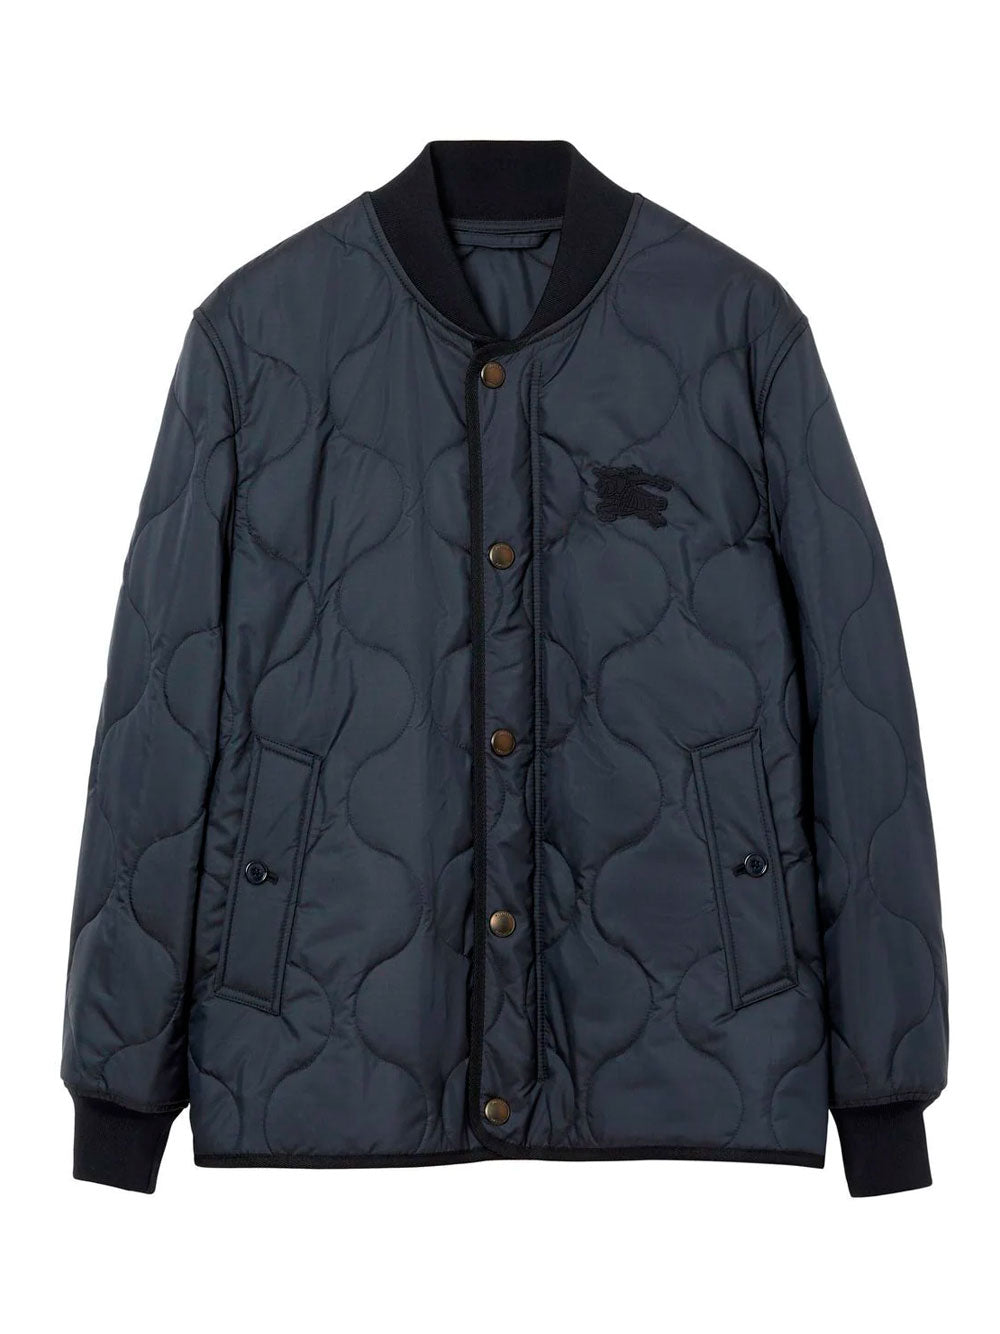 Broadfield jacket